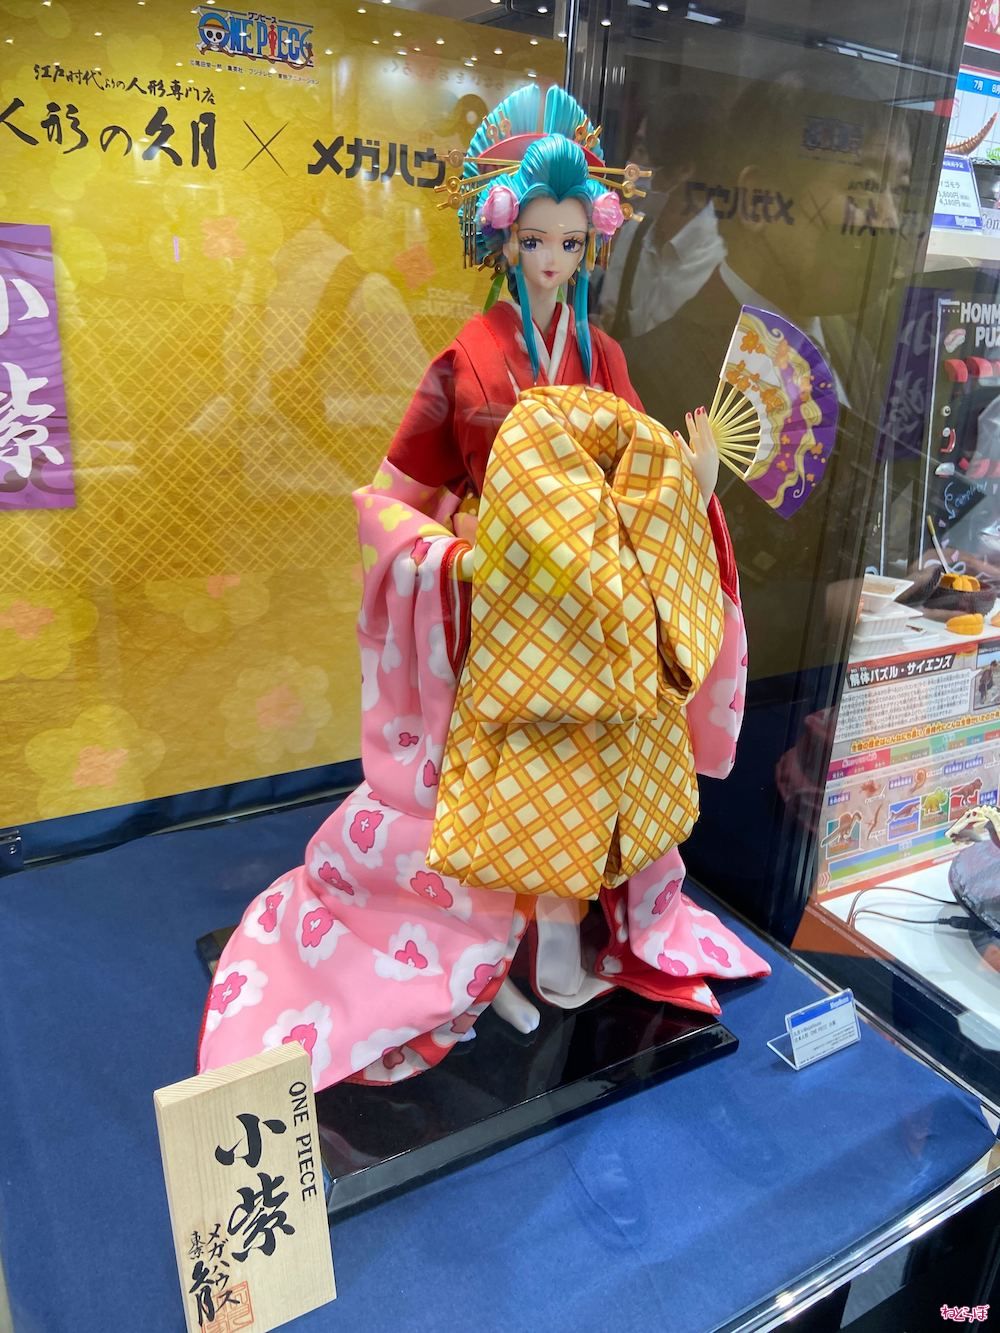 価格は約22万円 「ワンピース」小紫の日本人形が発売決定 老舗「久月 